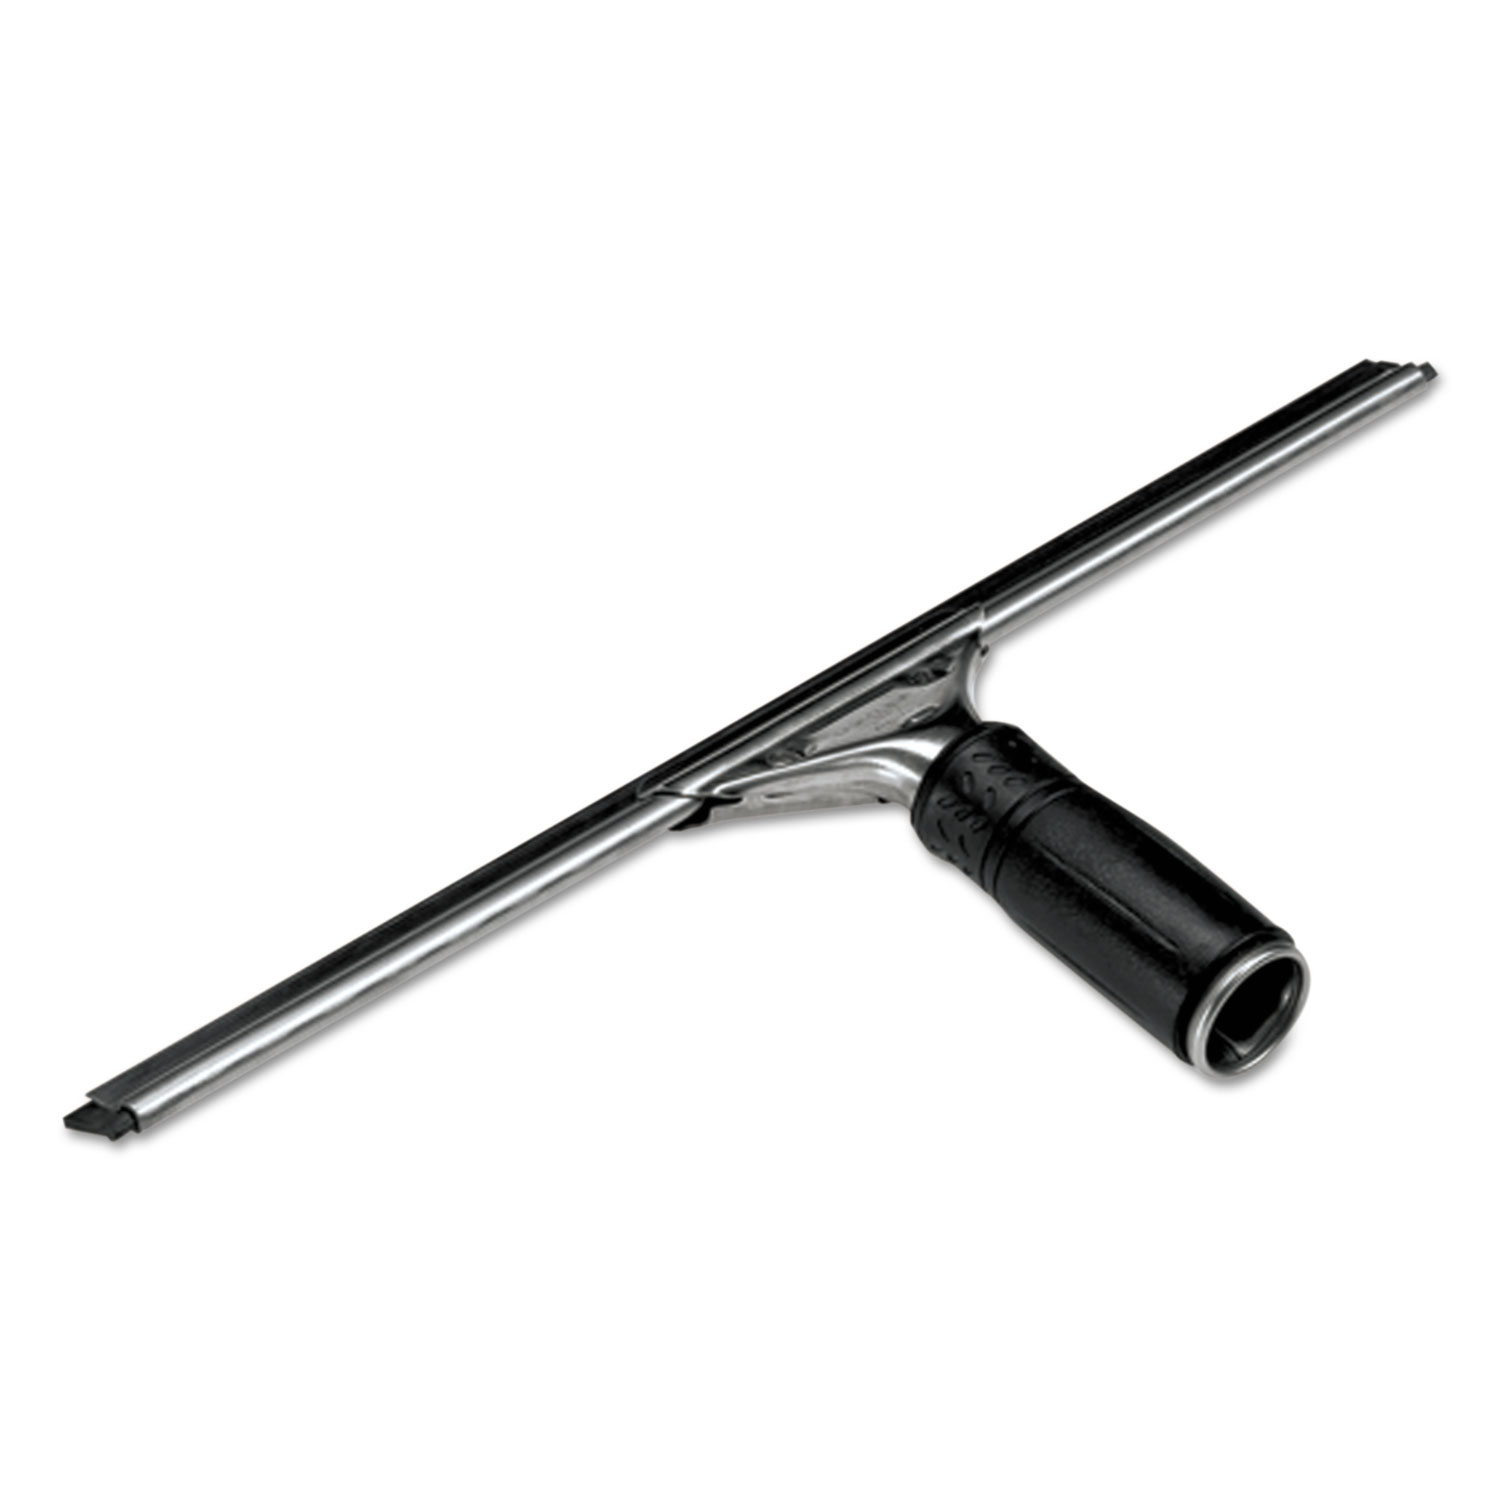  Unger PR400 Pro Stainless Steel Window Squeegee, 16 Wide Blade (UNGPR400) 